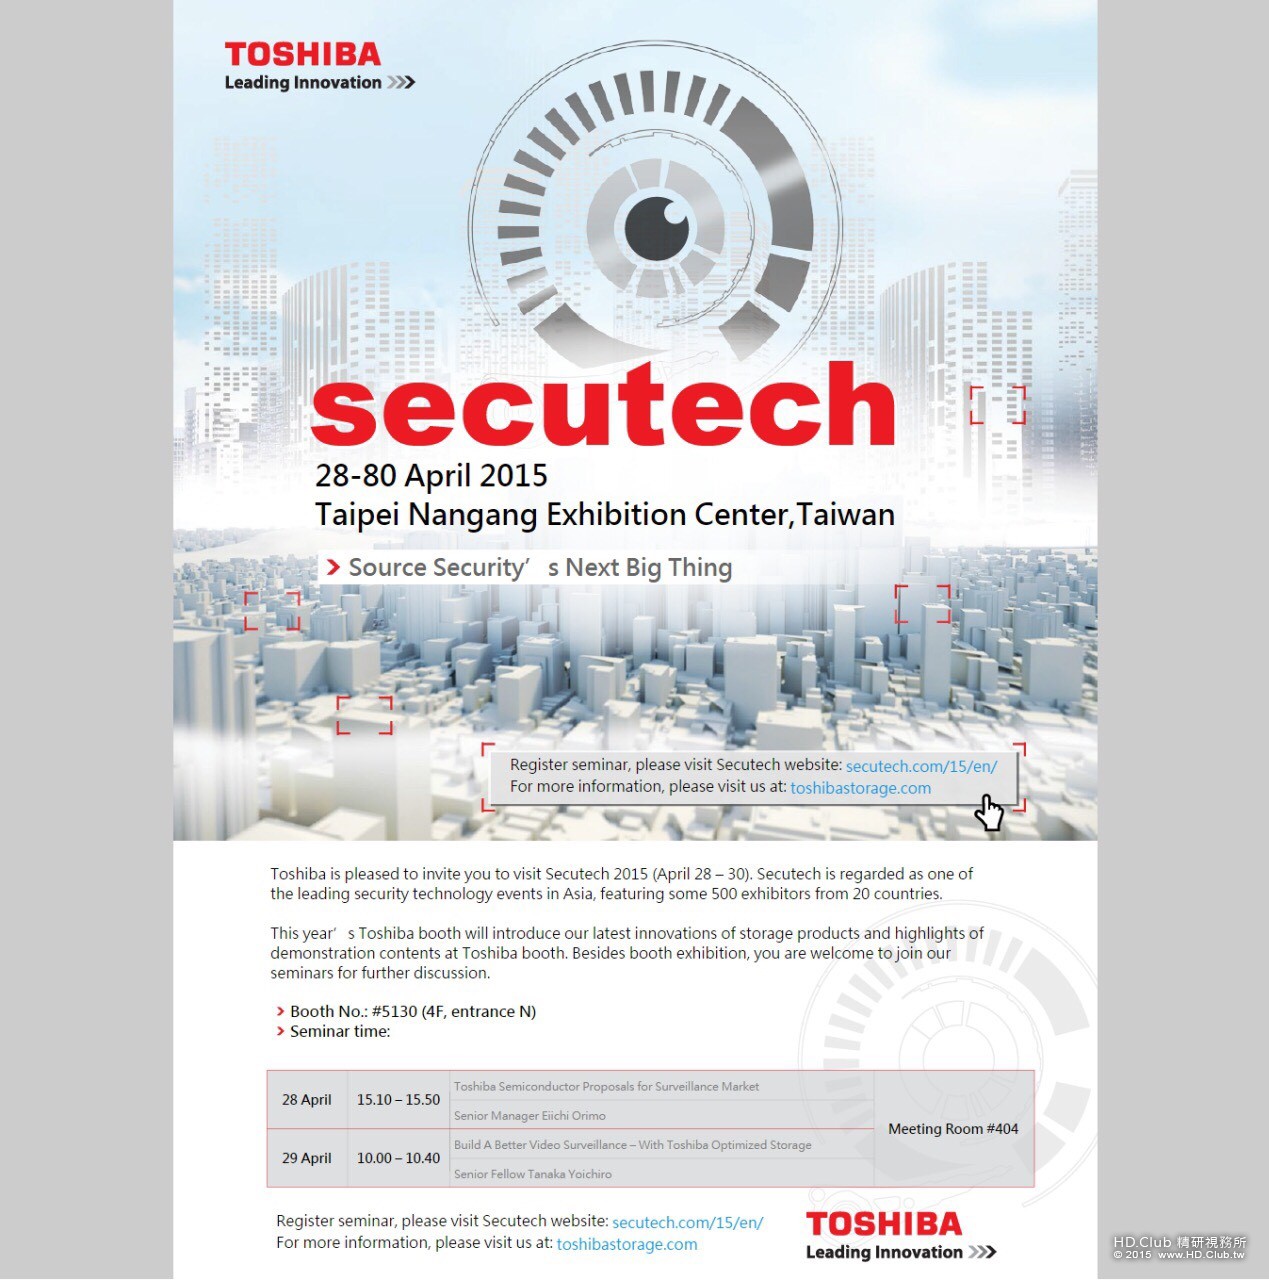 2. Toshiba 2015 Secutech 台北國際安全博覽會 研討會資訊圖。.jpg